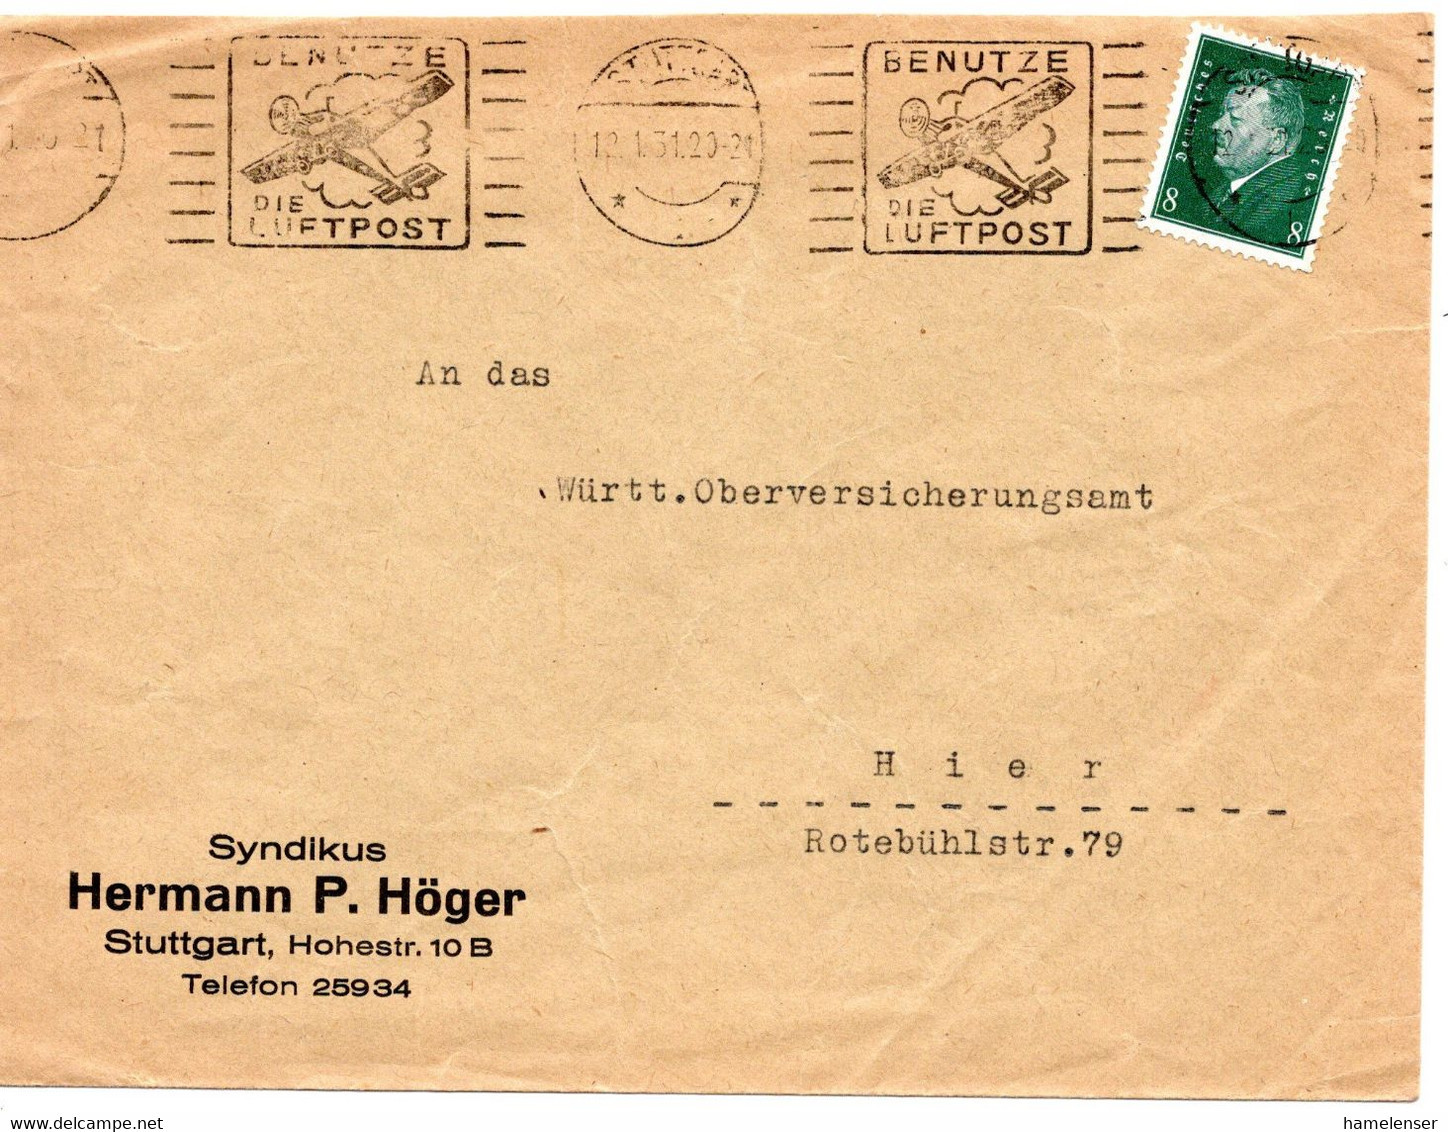 57046 - Deutsches Reich - 1931 - 8Pfg Ebert EF A Bf Innerh V STUTTGART - BENUTZE DIE LUFTPOST - Briefe U. Dokumente